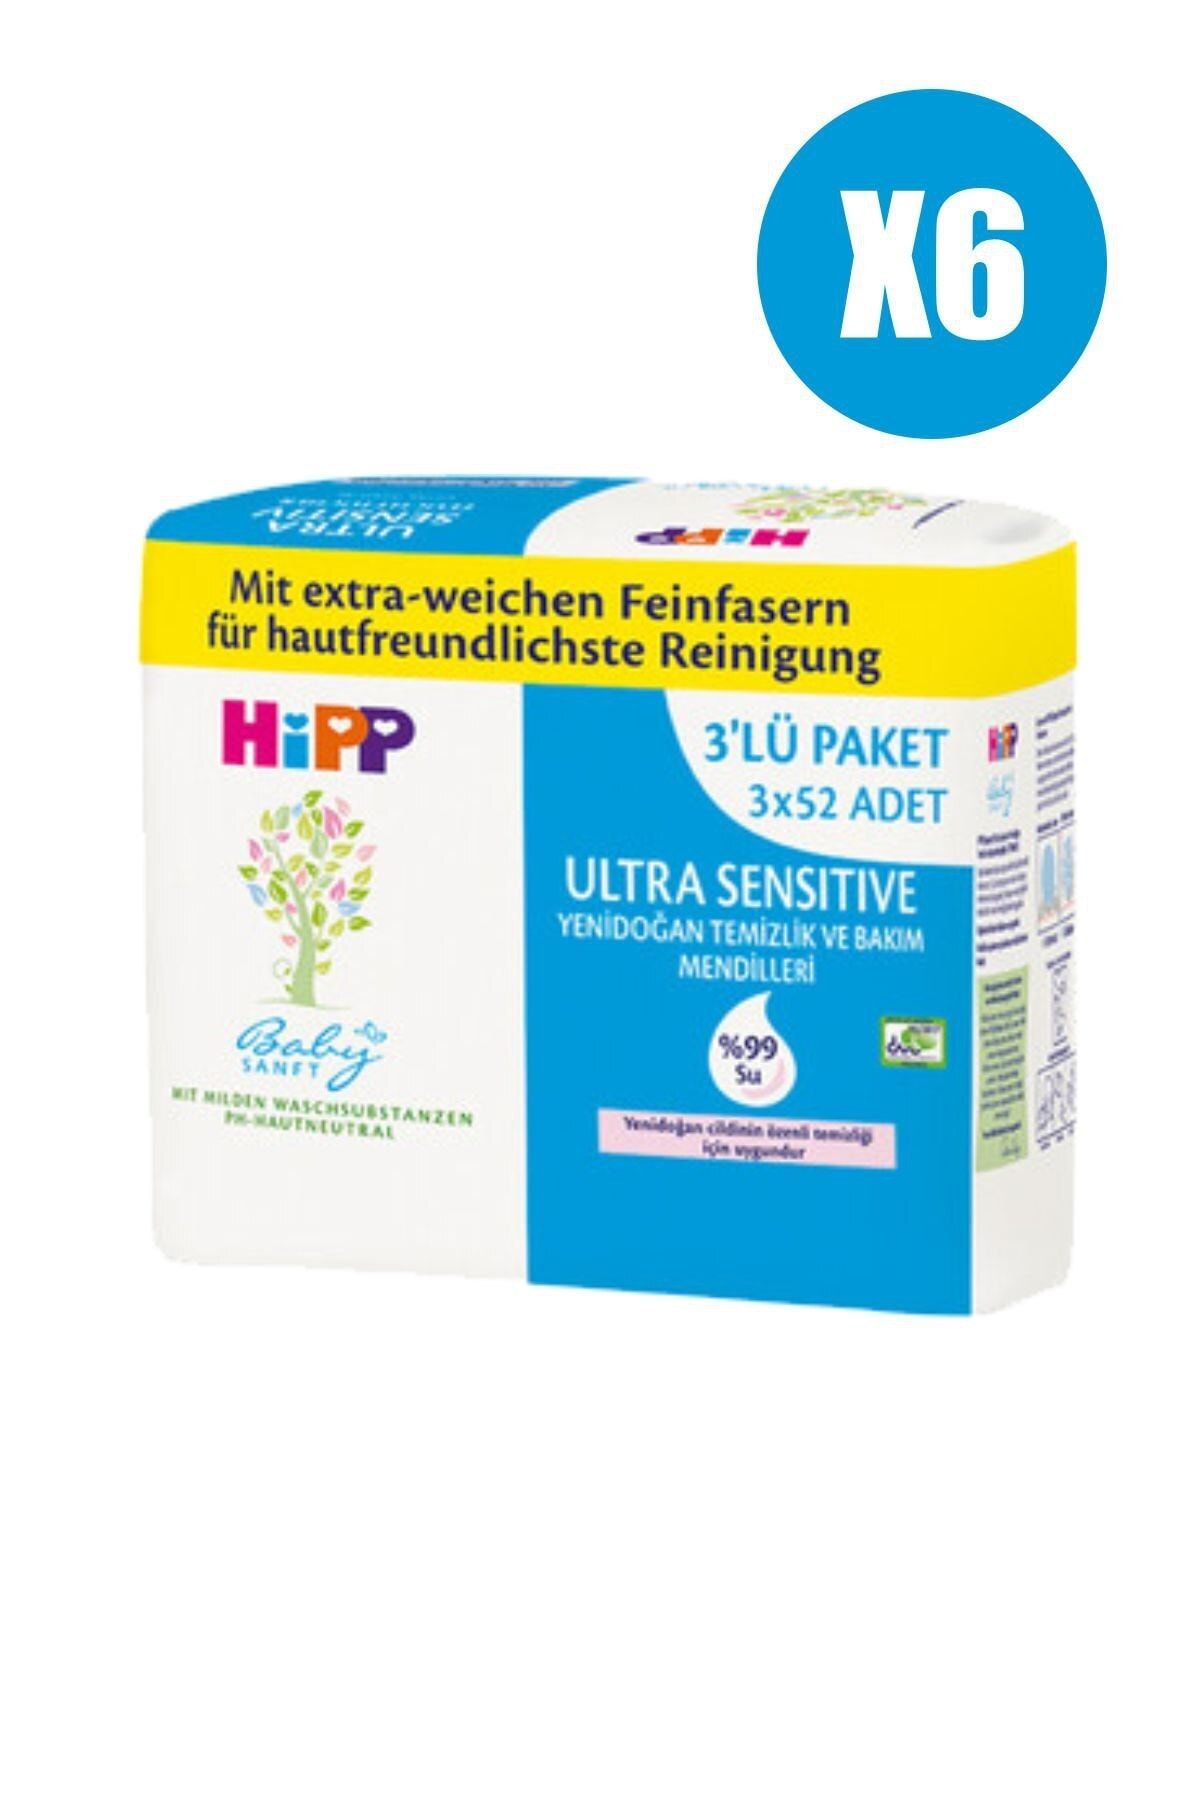 Hipp Babysanft Ultra Sensitive Yenidoğan Temizlik Ve Bakım Mendili 3x52 Ekonomik 6'lı Avantaj Paketi